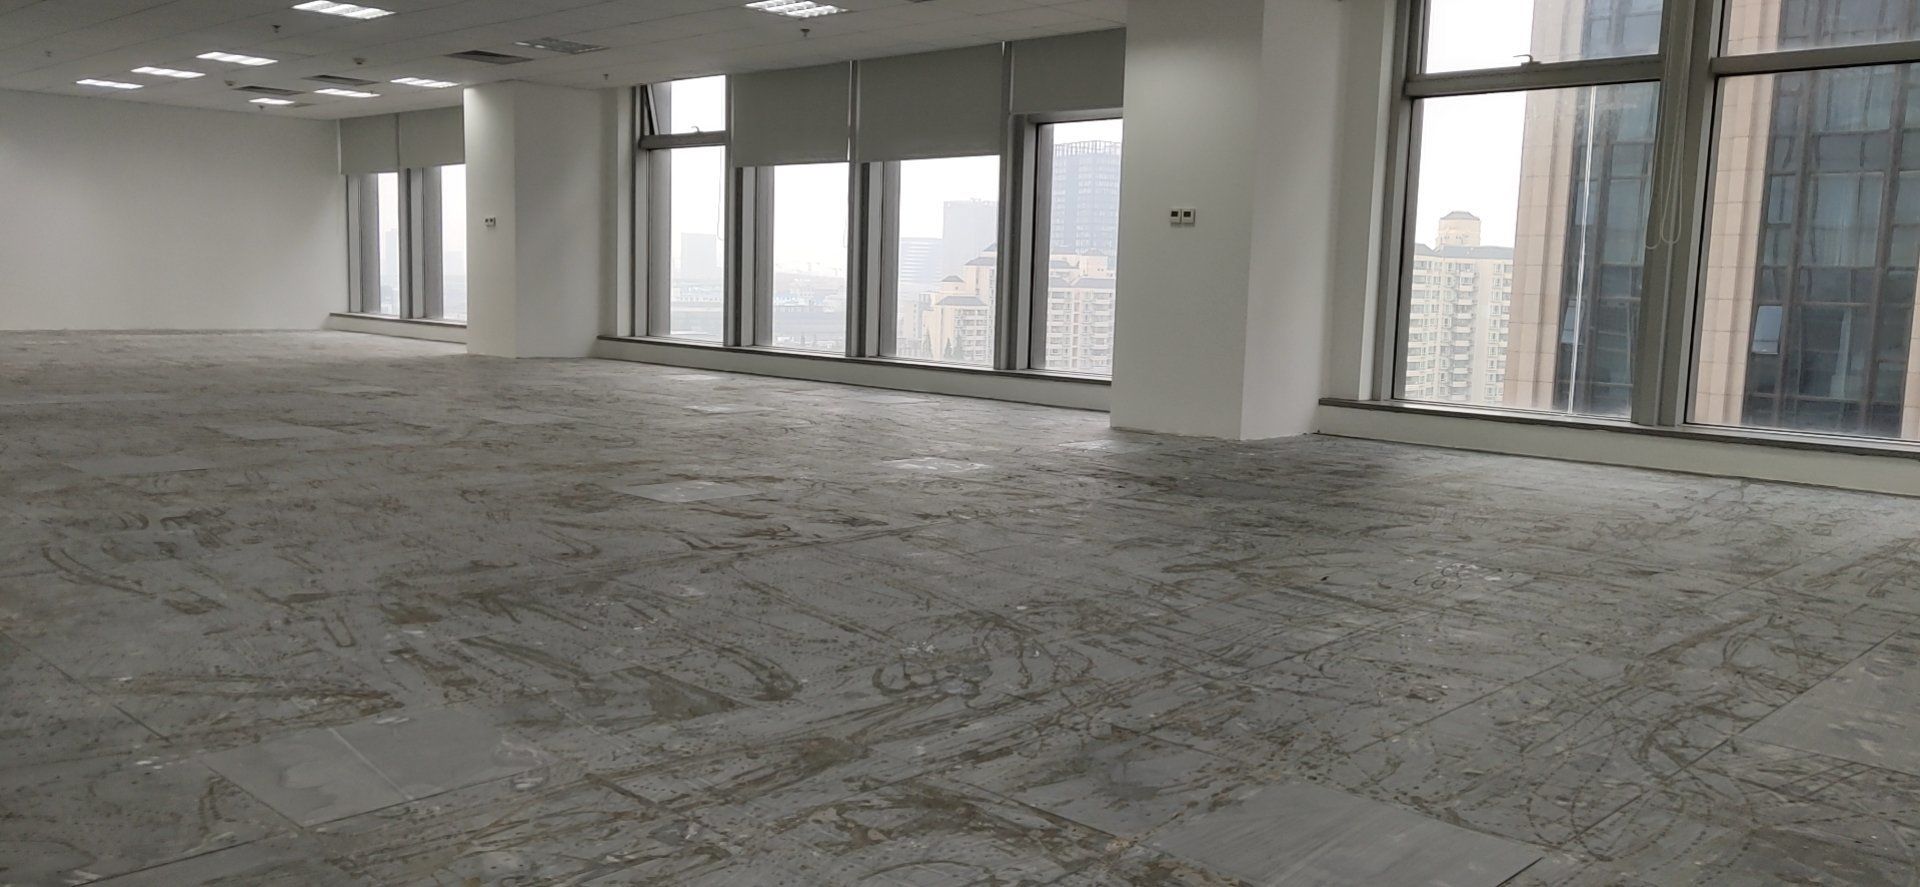 宝华中心373平米办公室出租-租金价格6.59元/m²/天